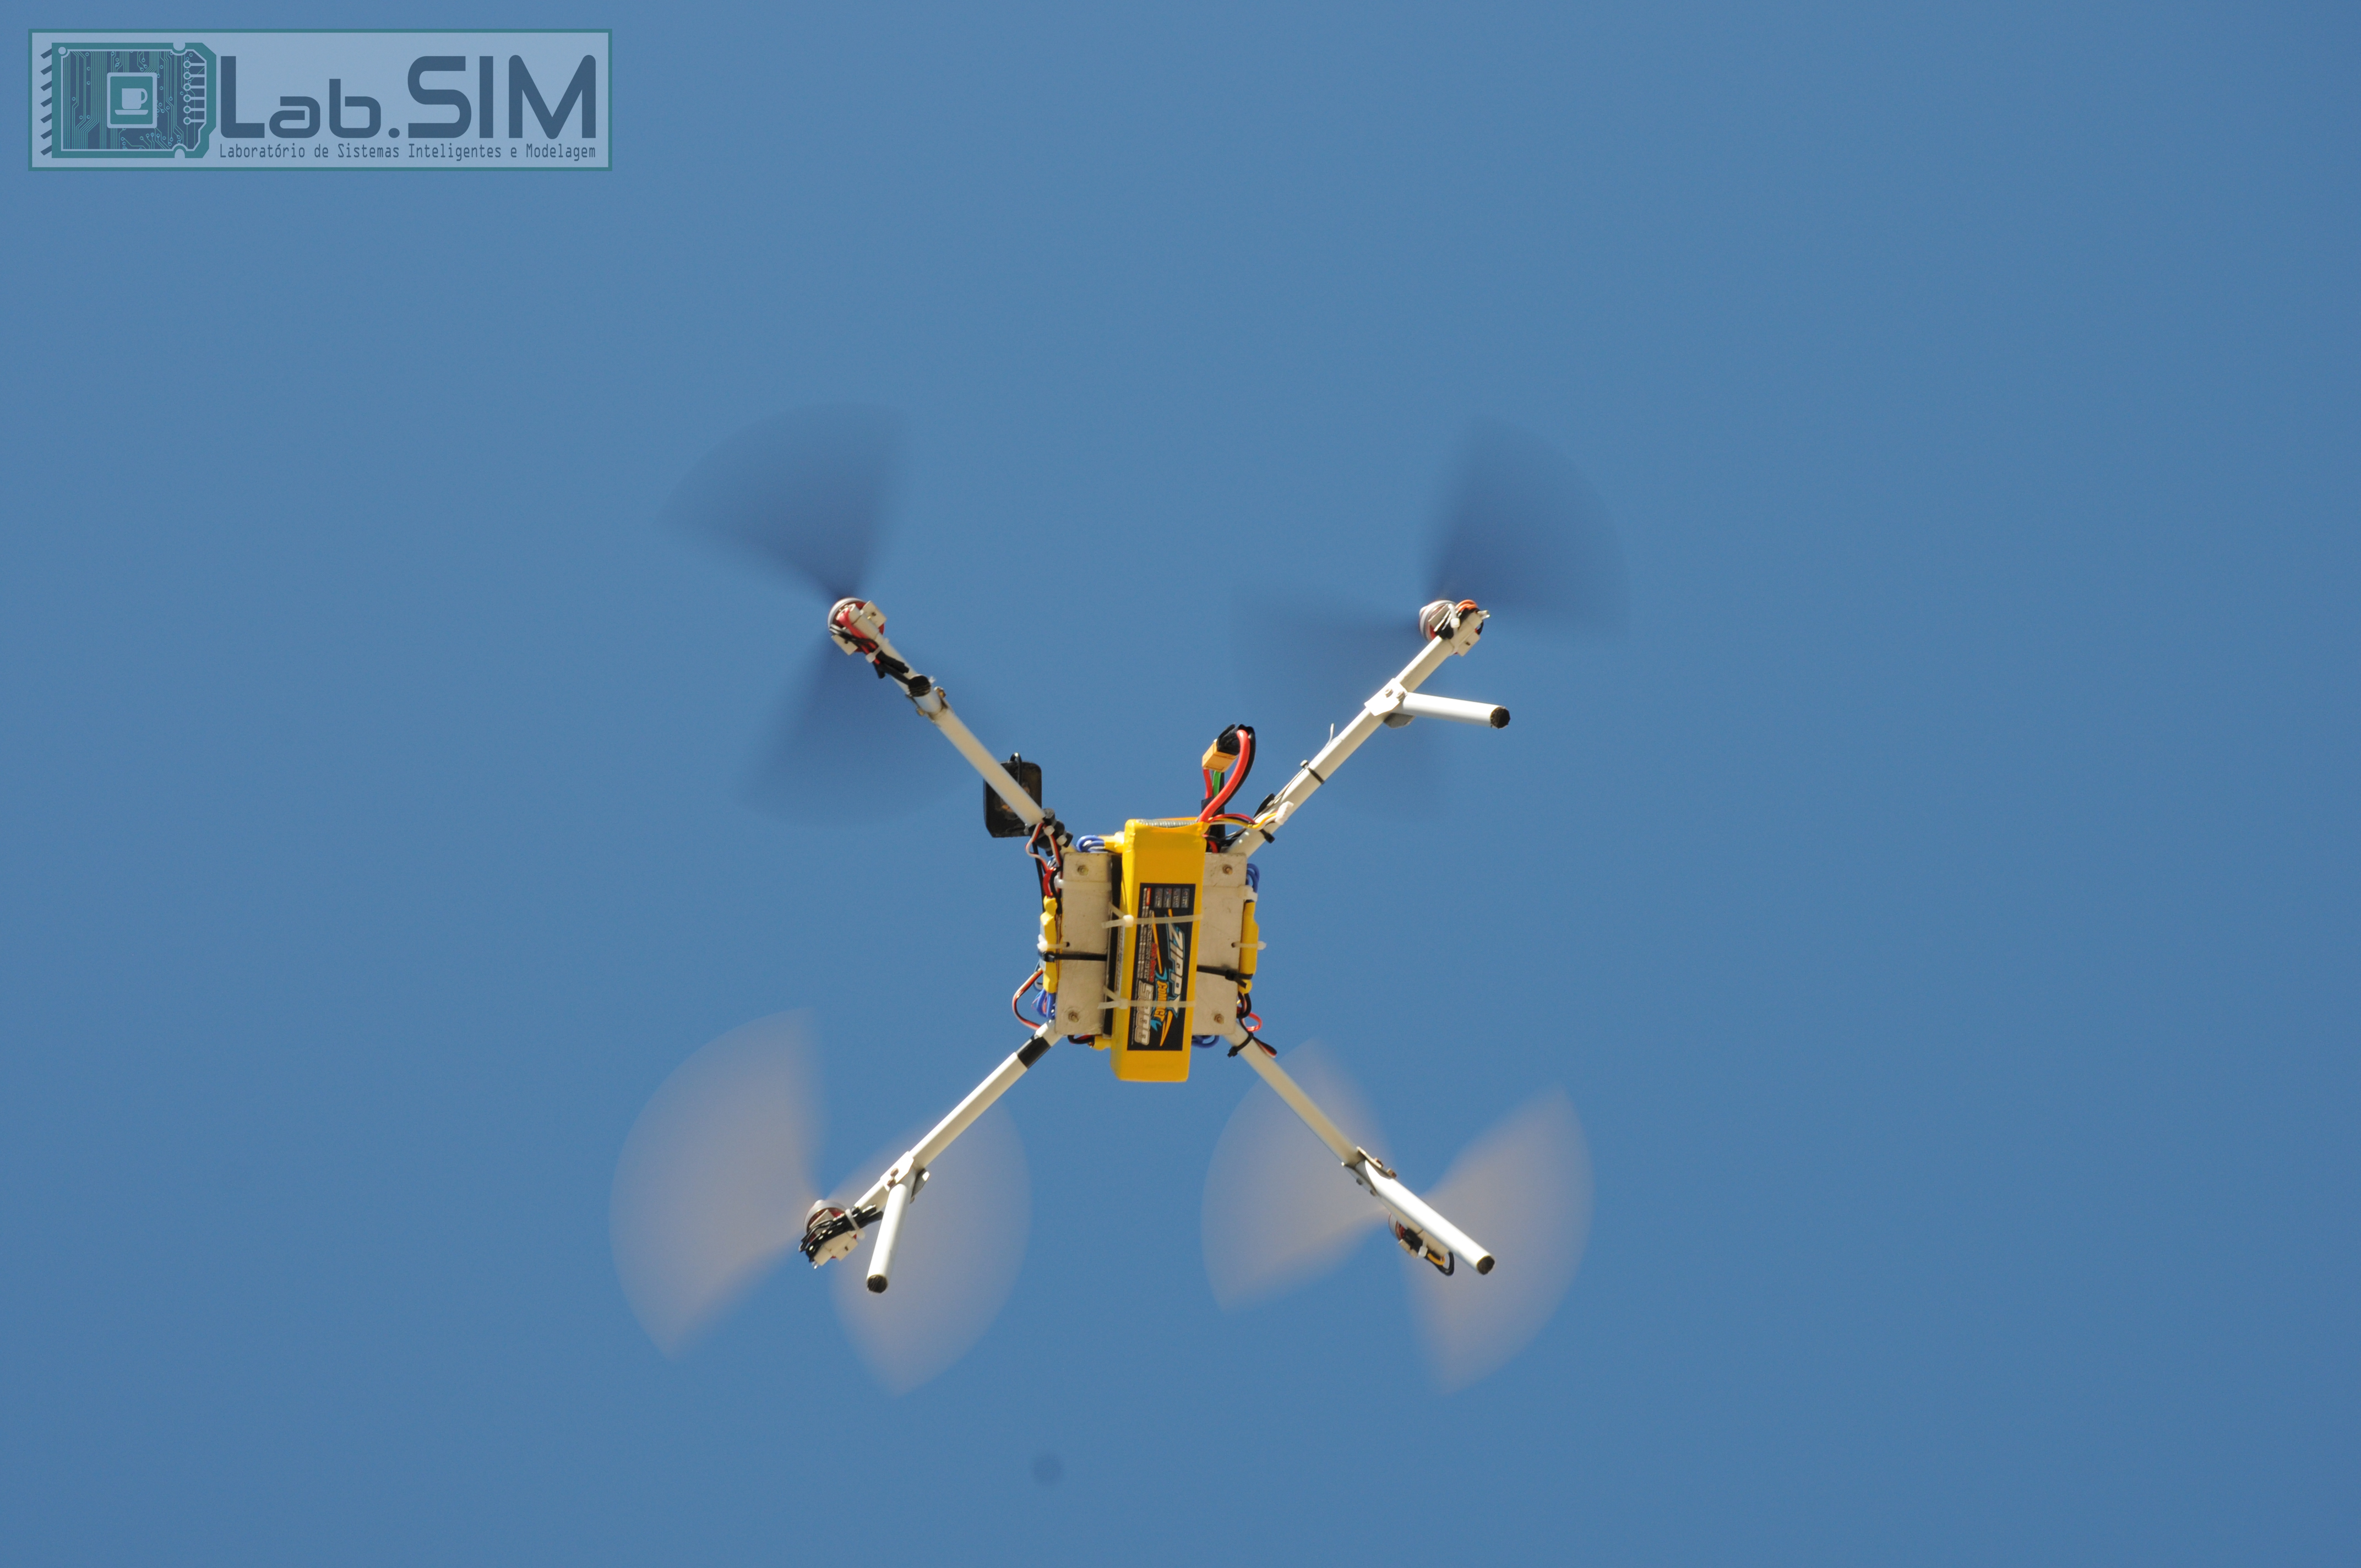 O custo para fabricar um drone varia entre R$2 mil e R$10 mil.